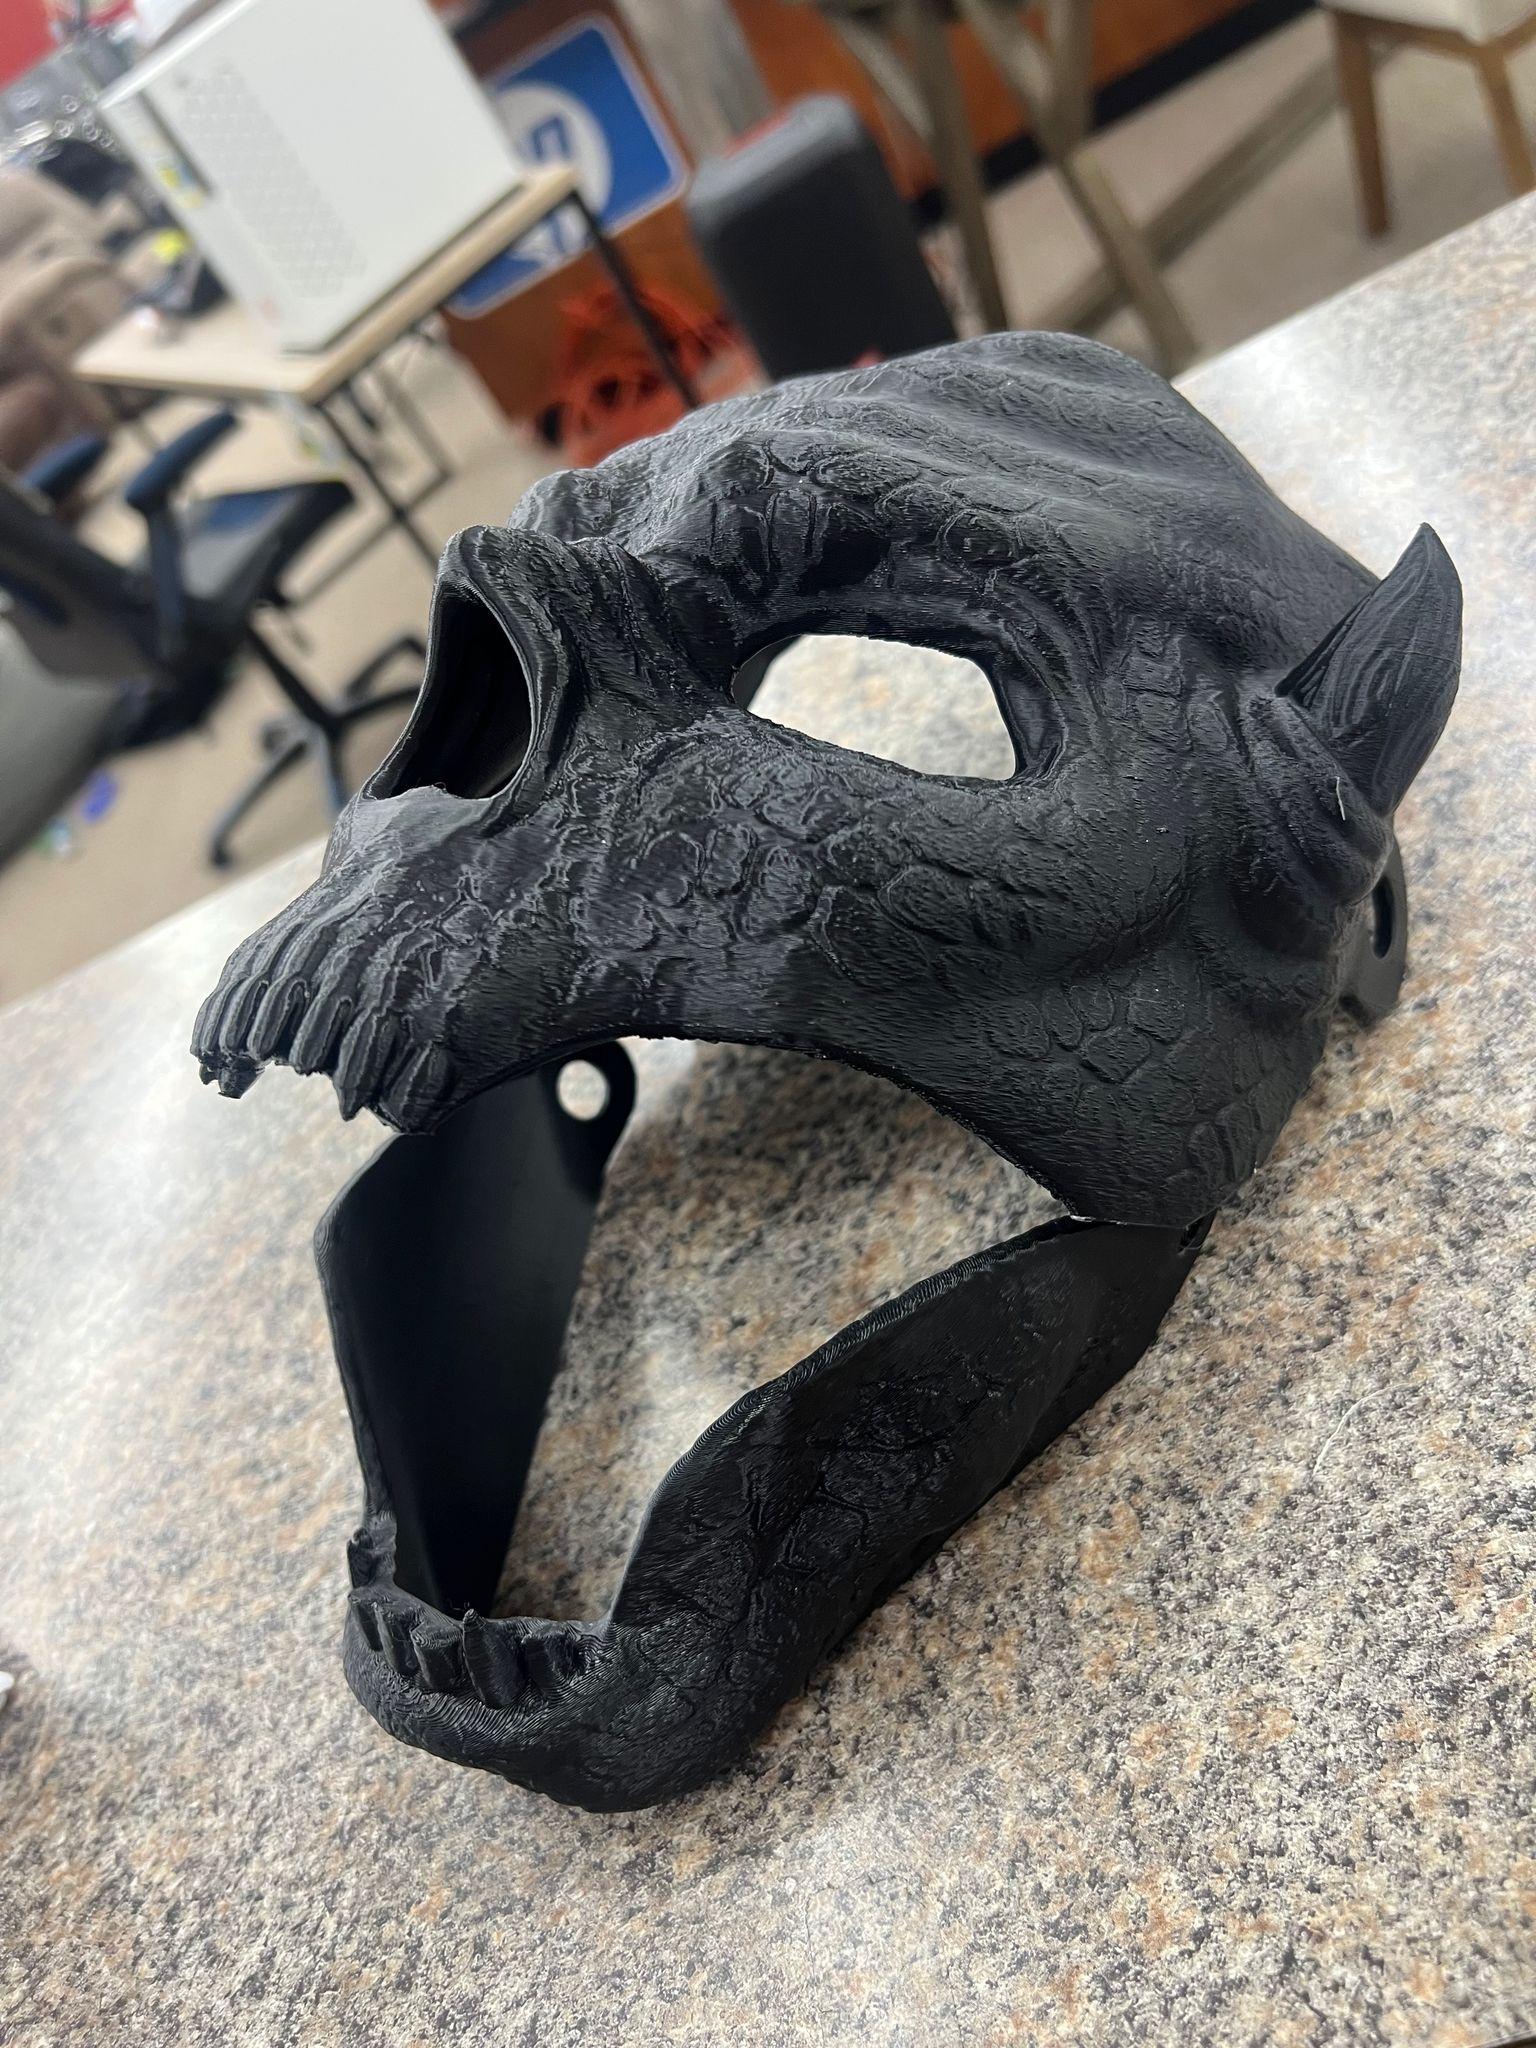 Wearable halloween mask - Lizard - Moving jaw 3d model